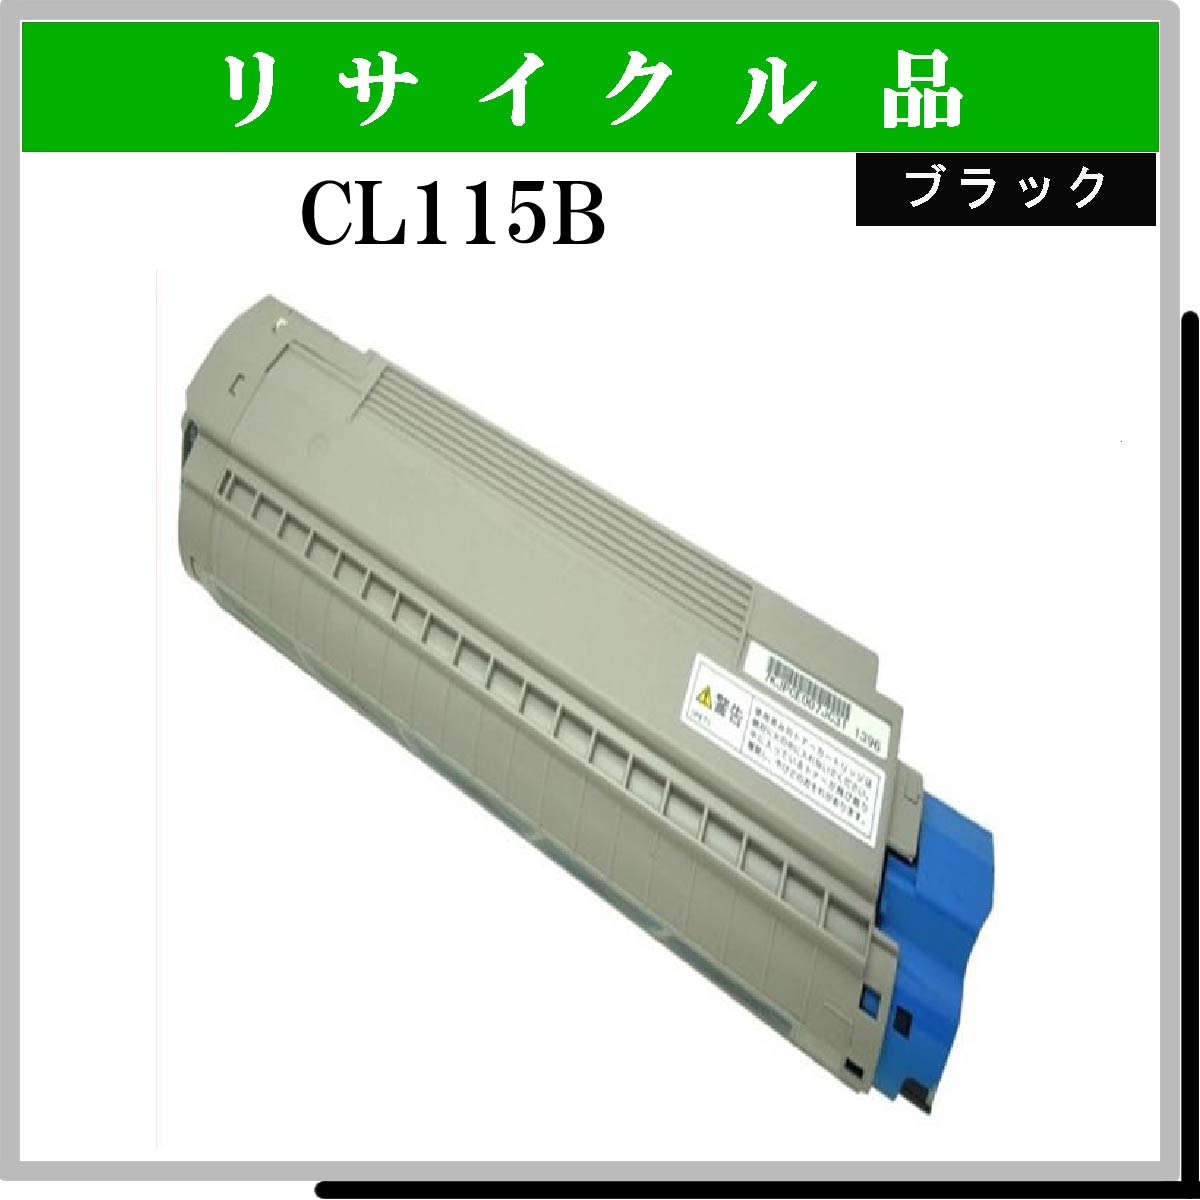 CL115B ﾌﾞﾗｯｸ